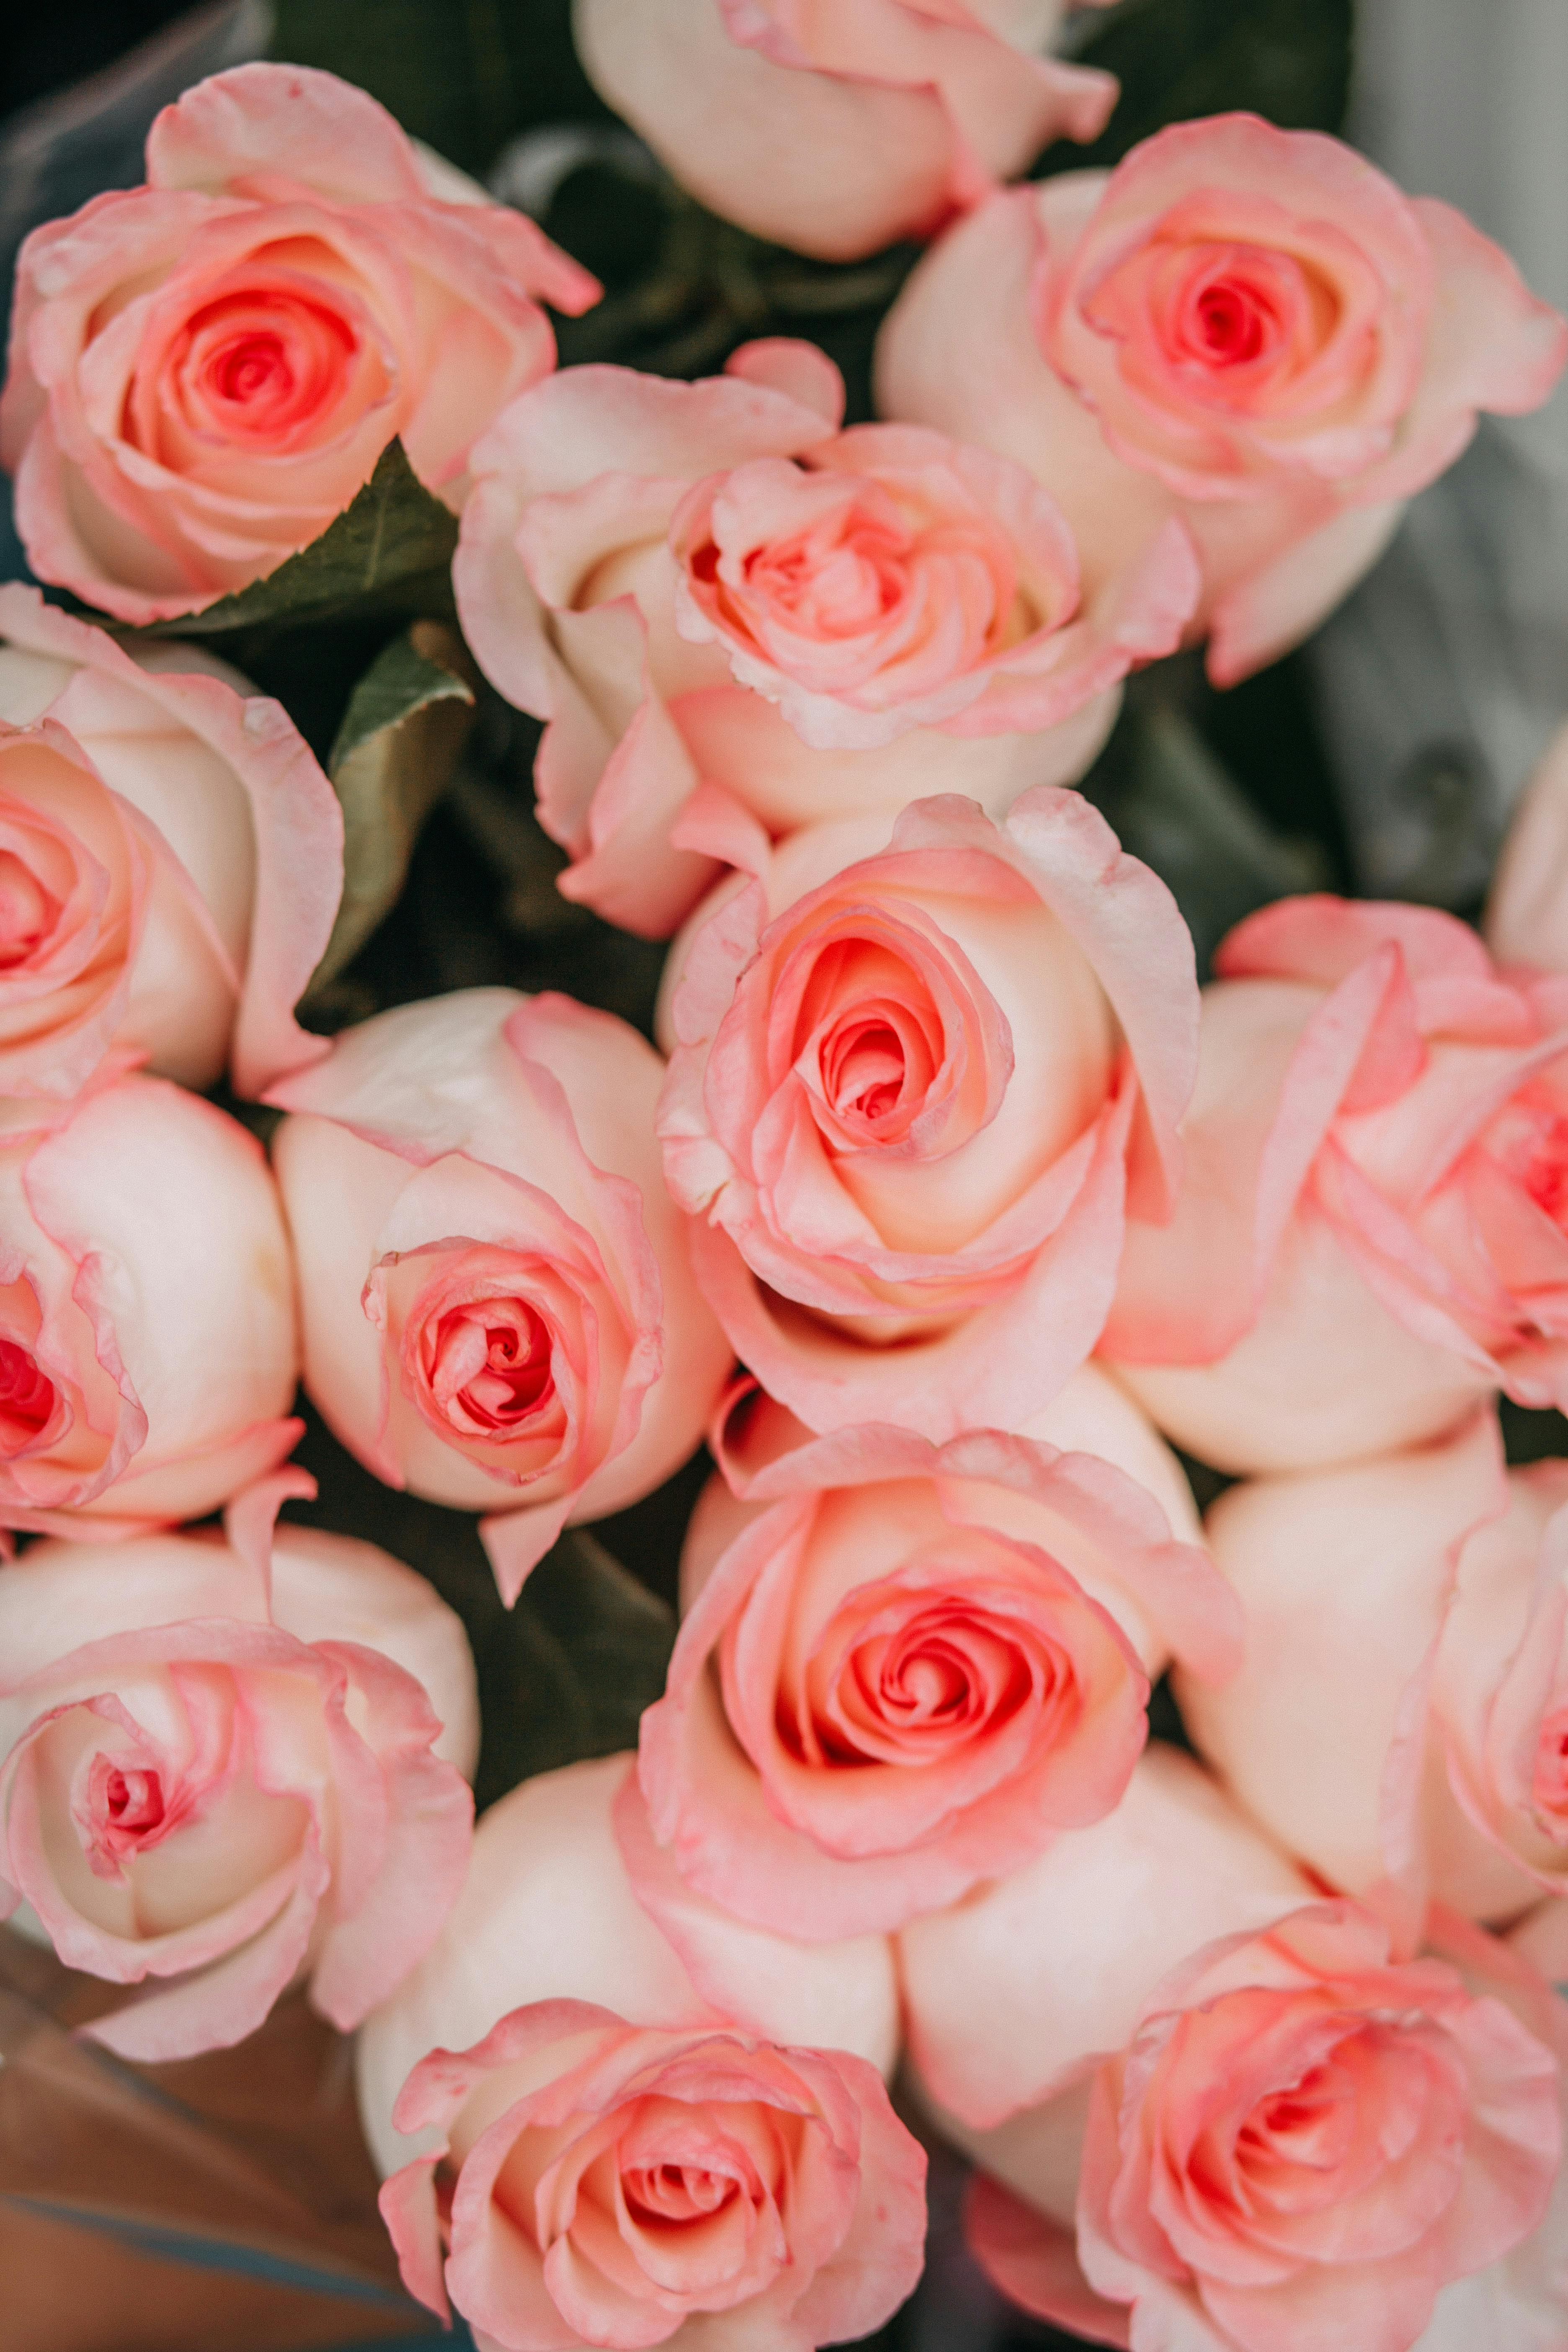 Hoa hồng hồng là một loài hoa rất đáng yêu và quyến rũ, với màu hồng nhạt tươi sáng bao trọn niềm vui và tình yêu. Hãy cùng chiêm ngưỡng hình ảnh hoa hồng hồng này để thấy sự đẹp đến ngỡ ngàng của nó.